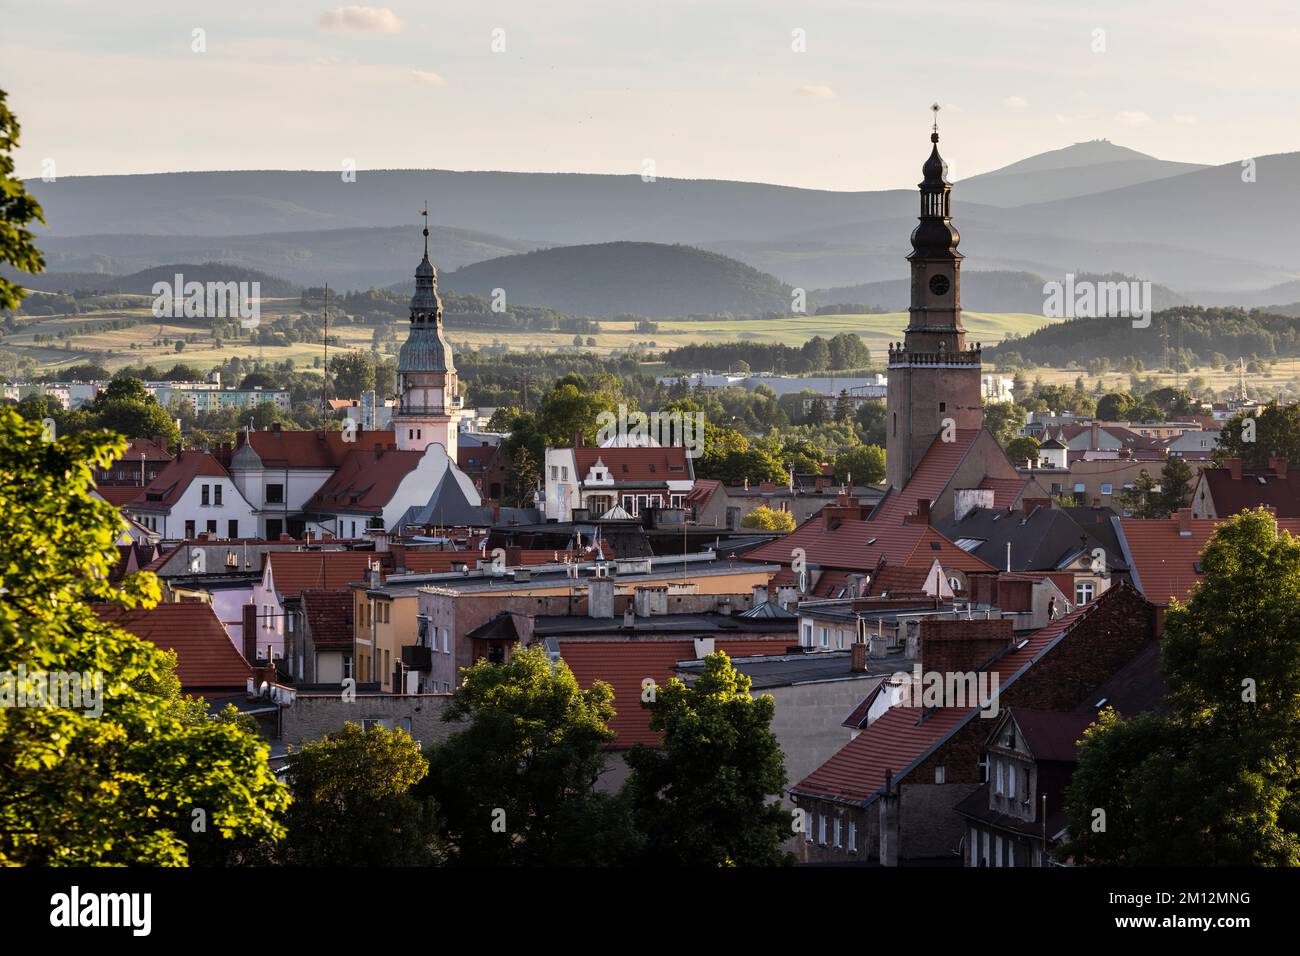 Europe, Poland, Lower Silesia, Kamienna Gora / Landeshut in Schlesien Stock Photo